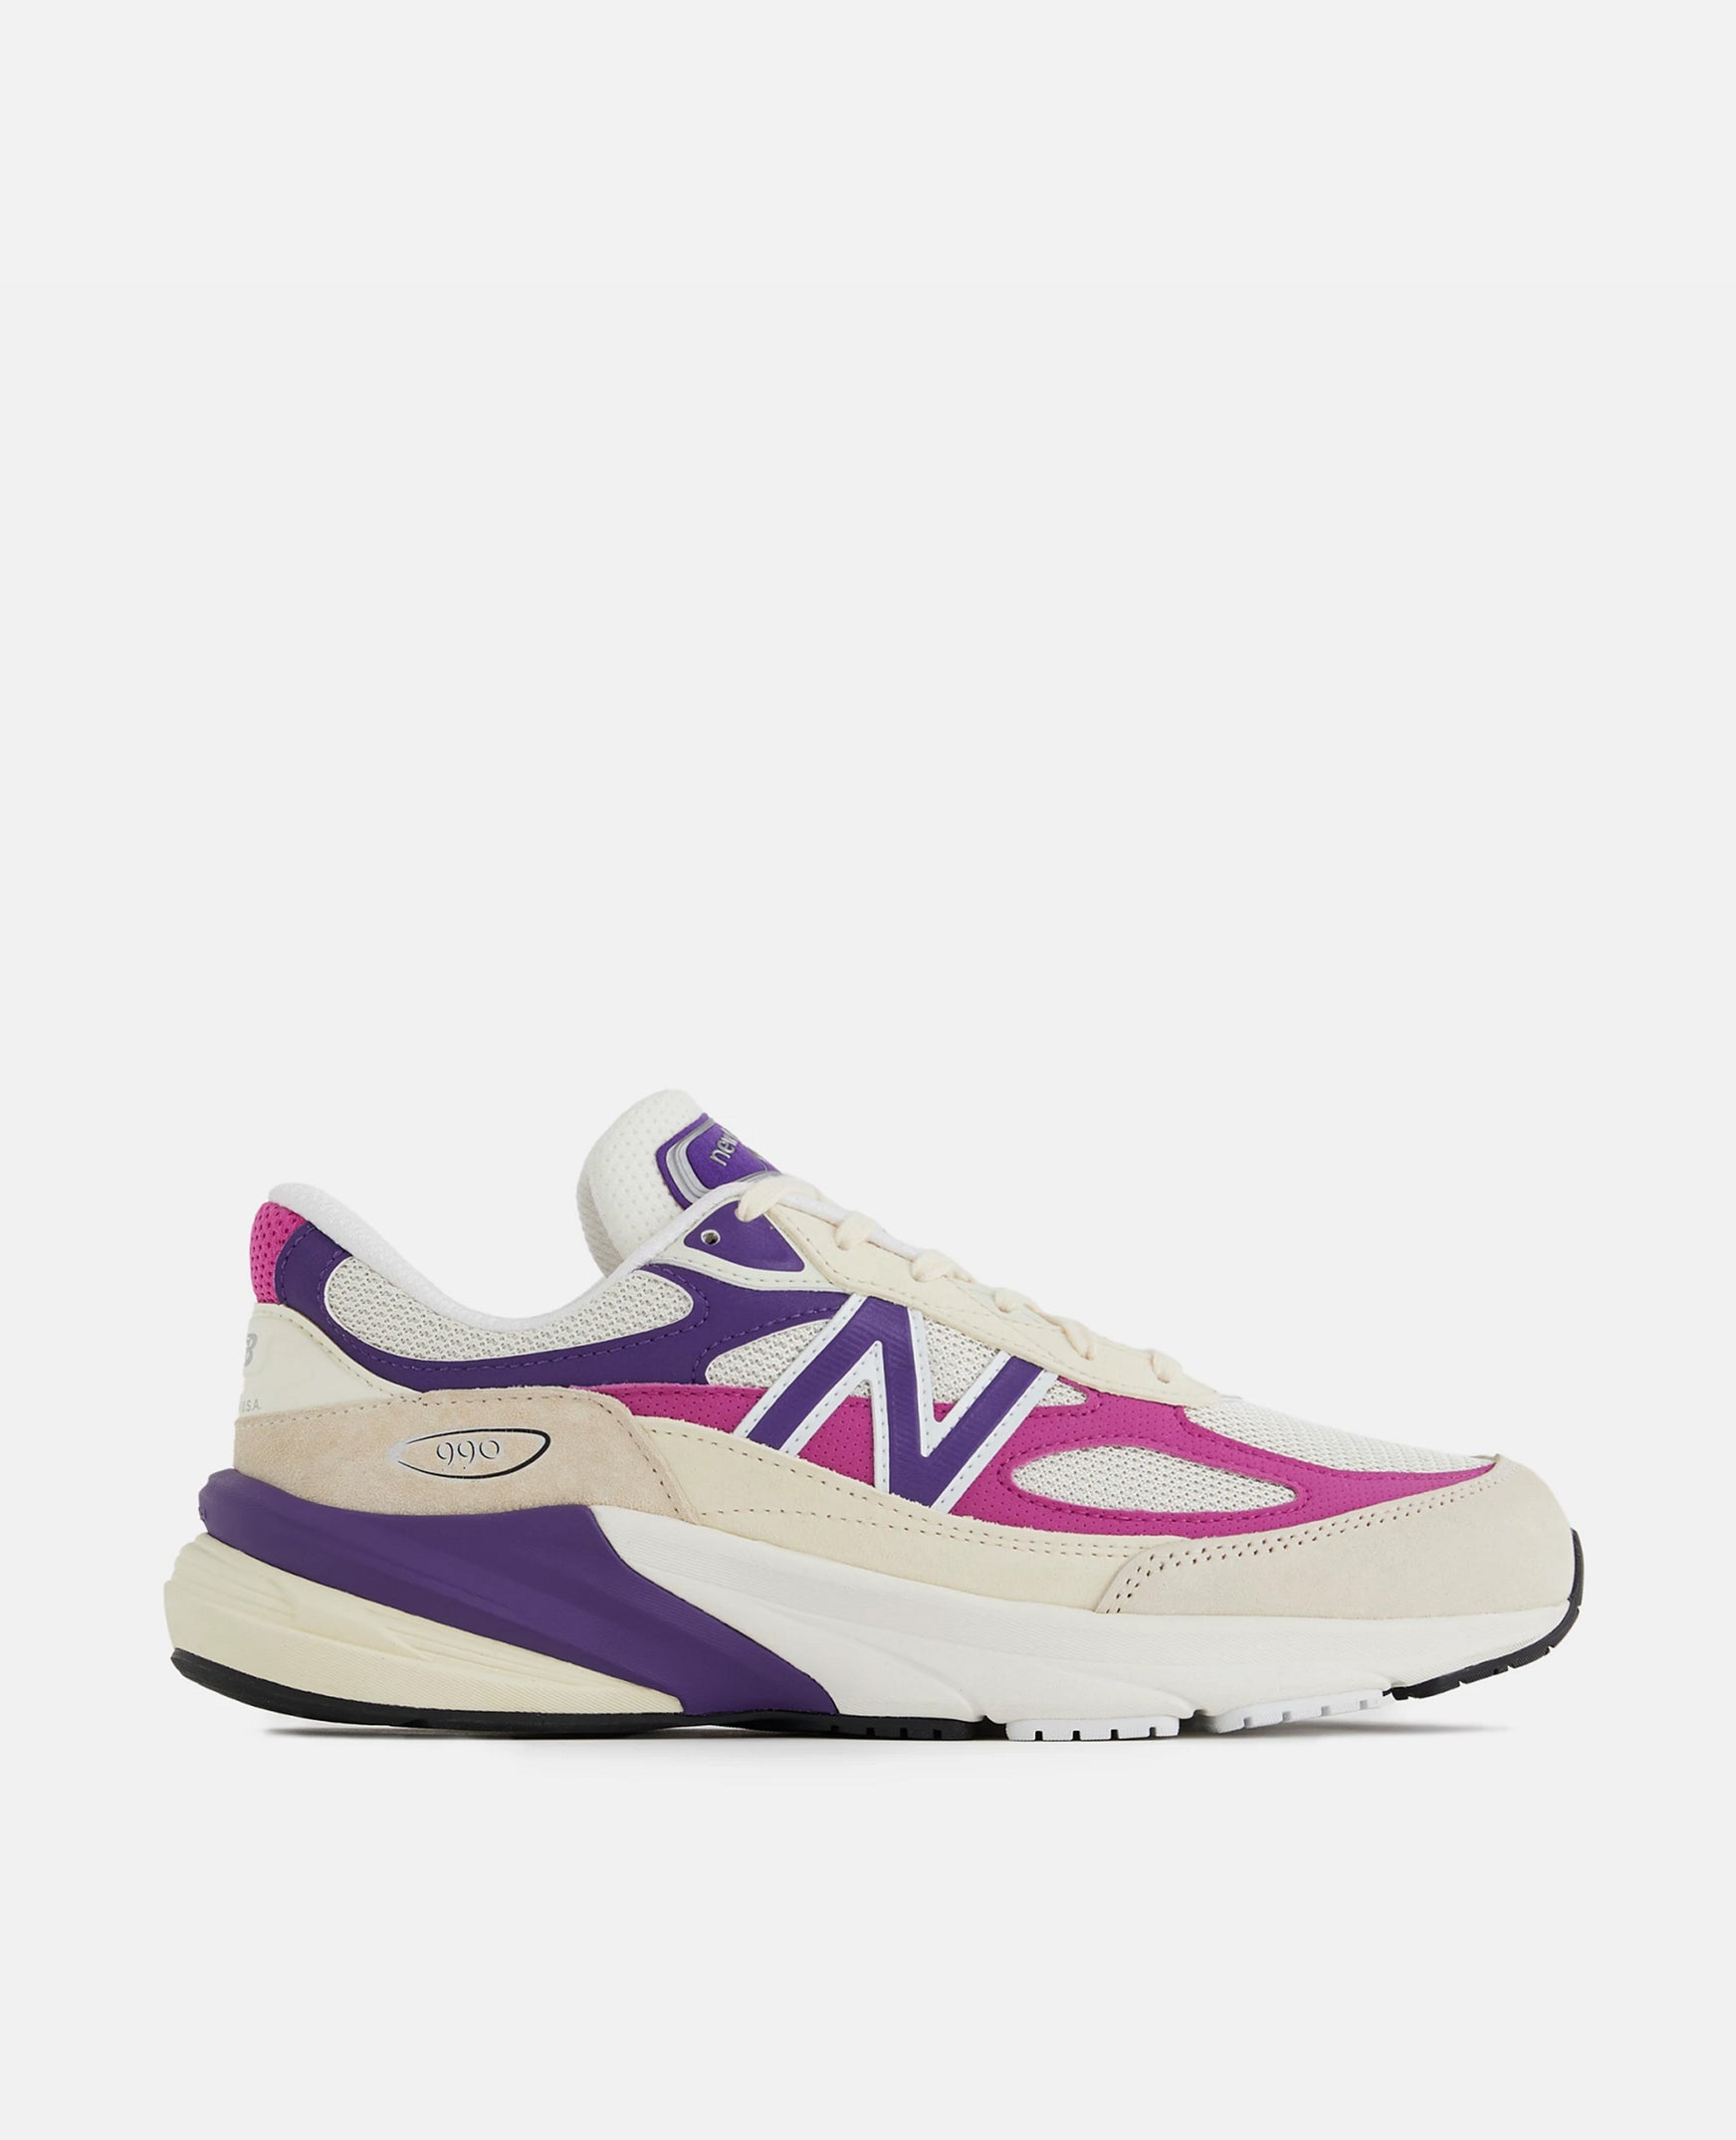 New Balance 990v6 (Purple/Angora)